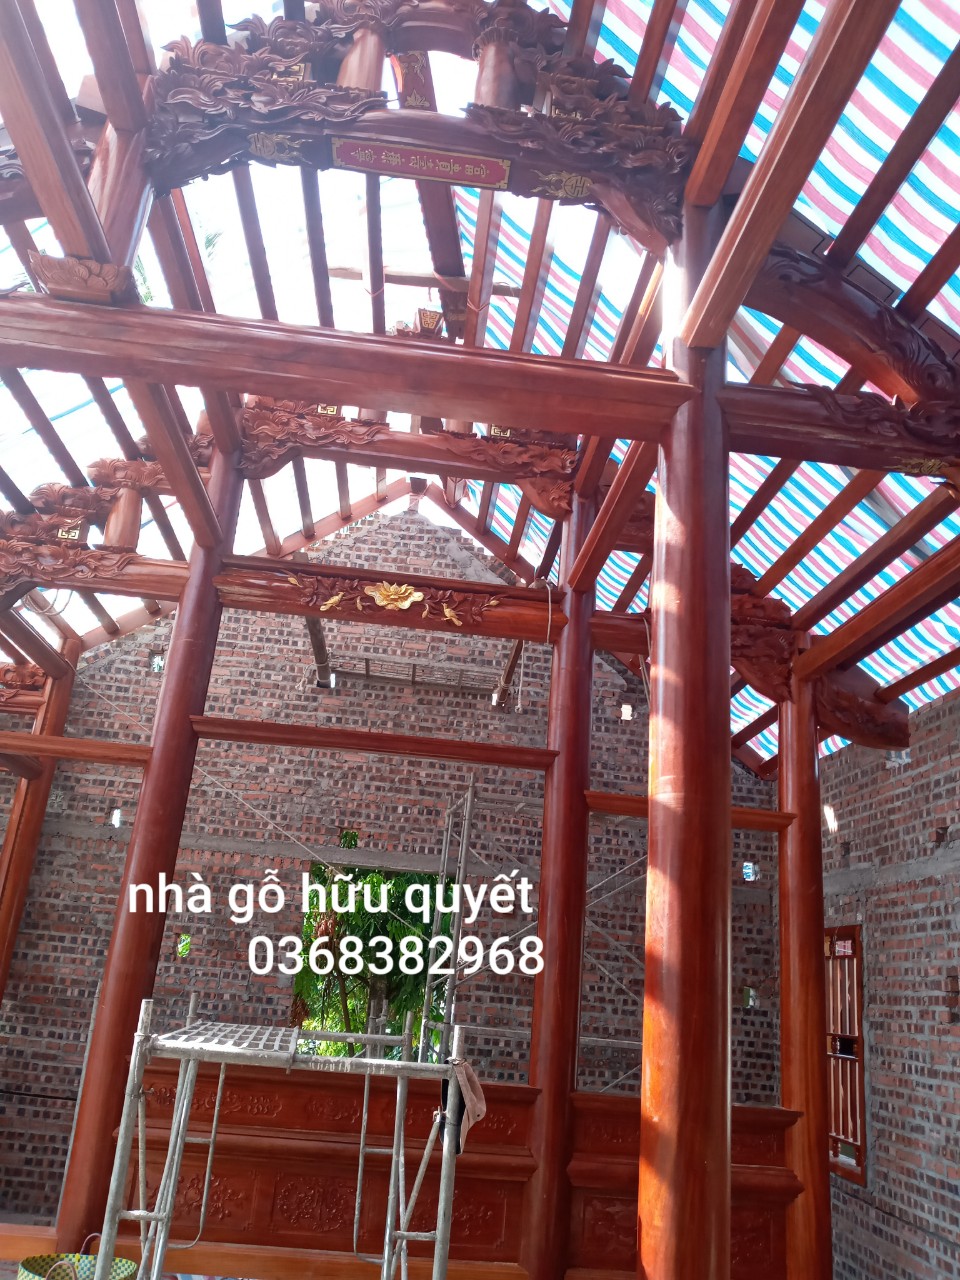 Hữu Quyết chuyên thi công nhà gỗ cổ truyền địa chỉ Hòa Bình, Vĩnh Bảo, Hải Phòng 11438341